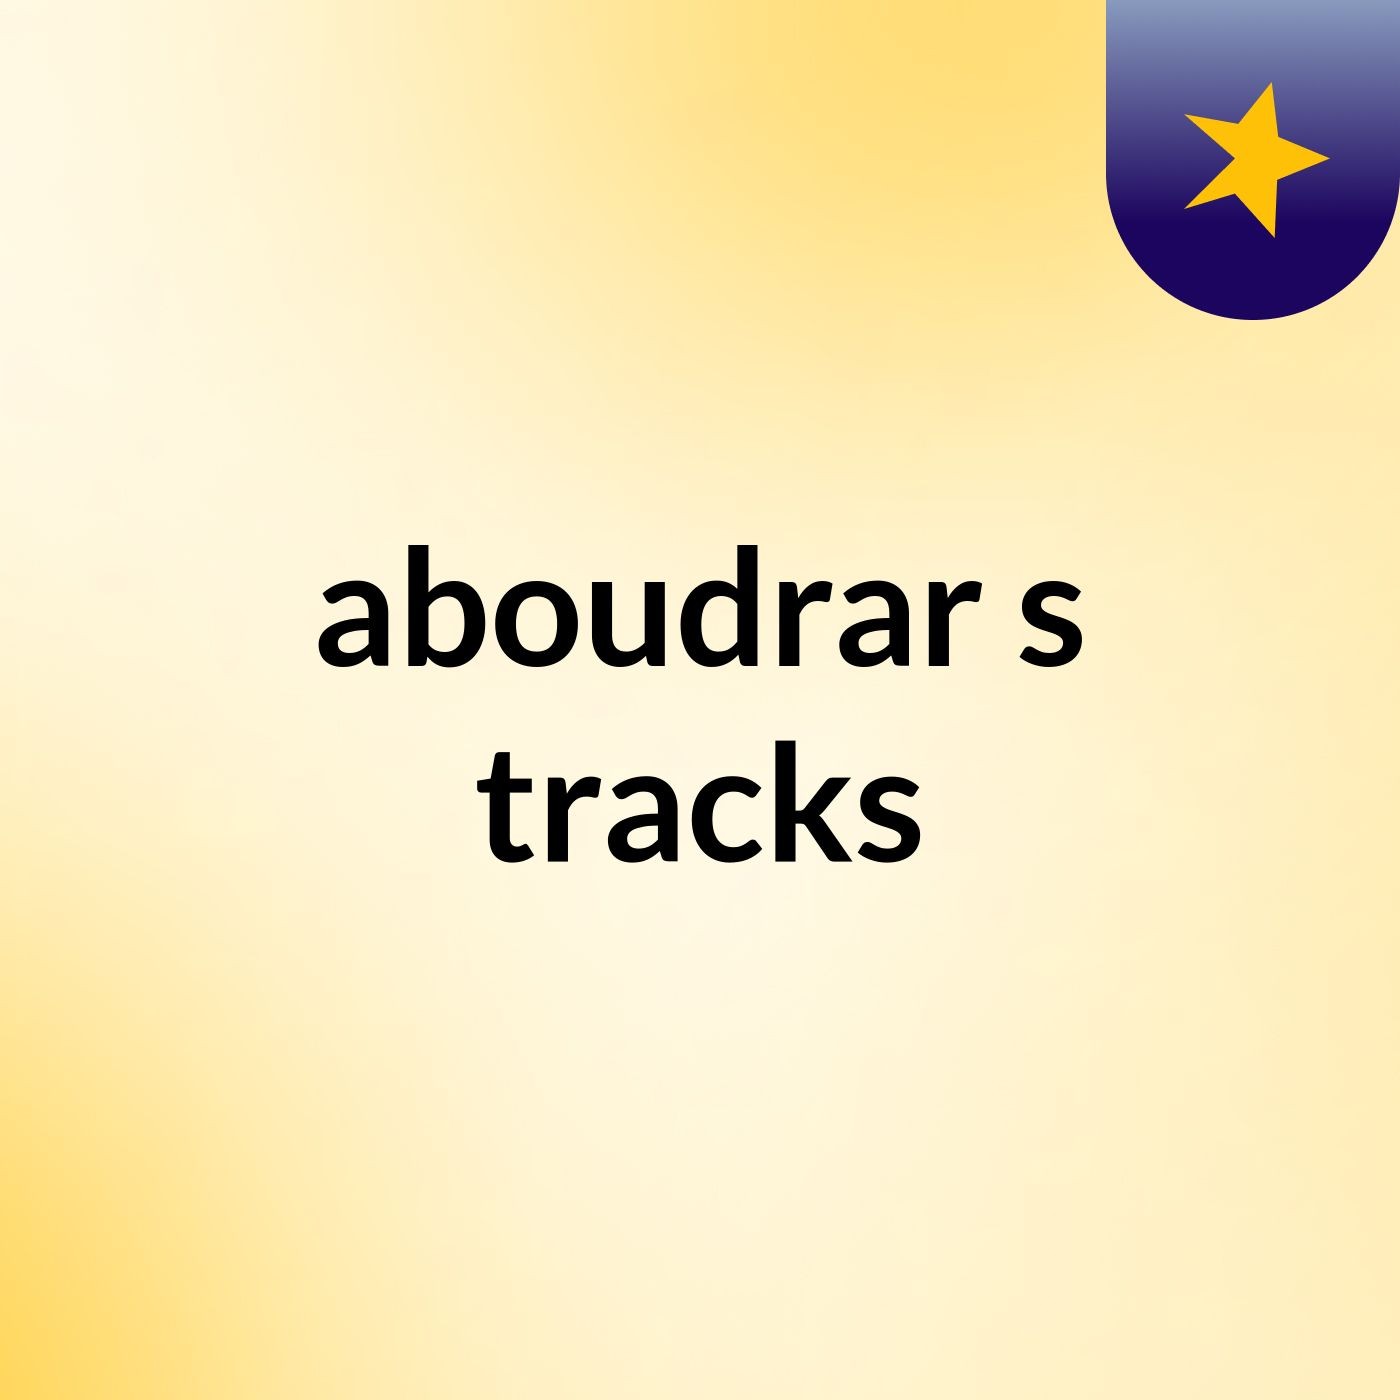 aboudrar's tracks